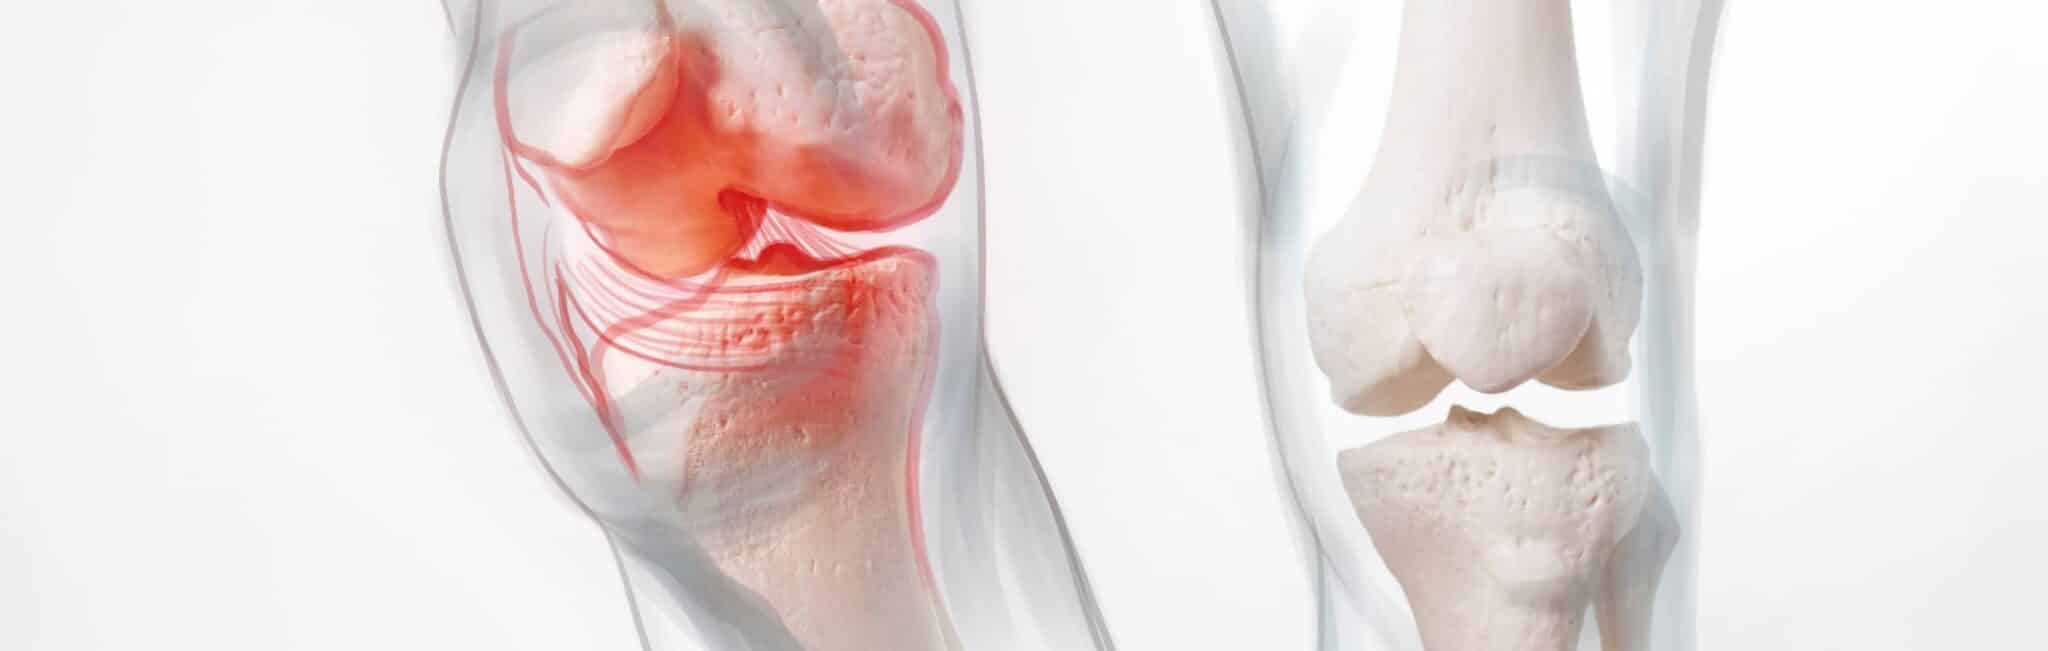 Comment savoir si j'ai de l'arthrose au genou ? | Dr Paillard | Paris